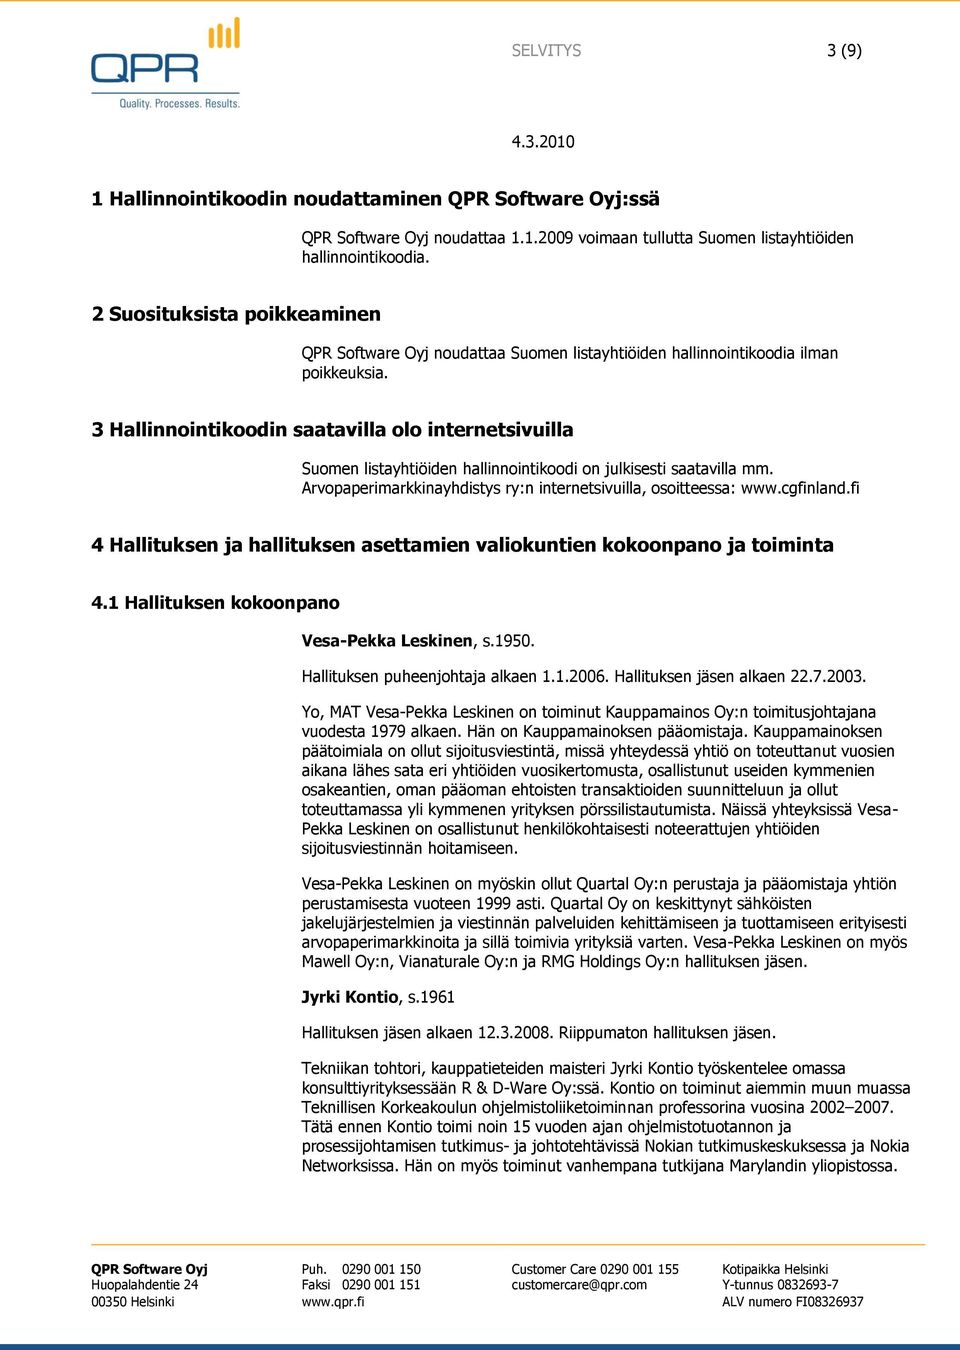 3 Hallinnointikoodin saatavilla olo internetsivuilla Suomen listayhtiöiden hallinnointikoodi on julkisesti saatavilla mm. Arvopaperimarkkinayhdistys ry:n internetsivuilla, osoitteessa: www.cgfinland.